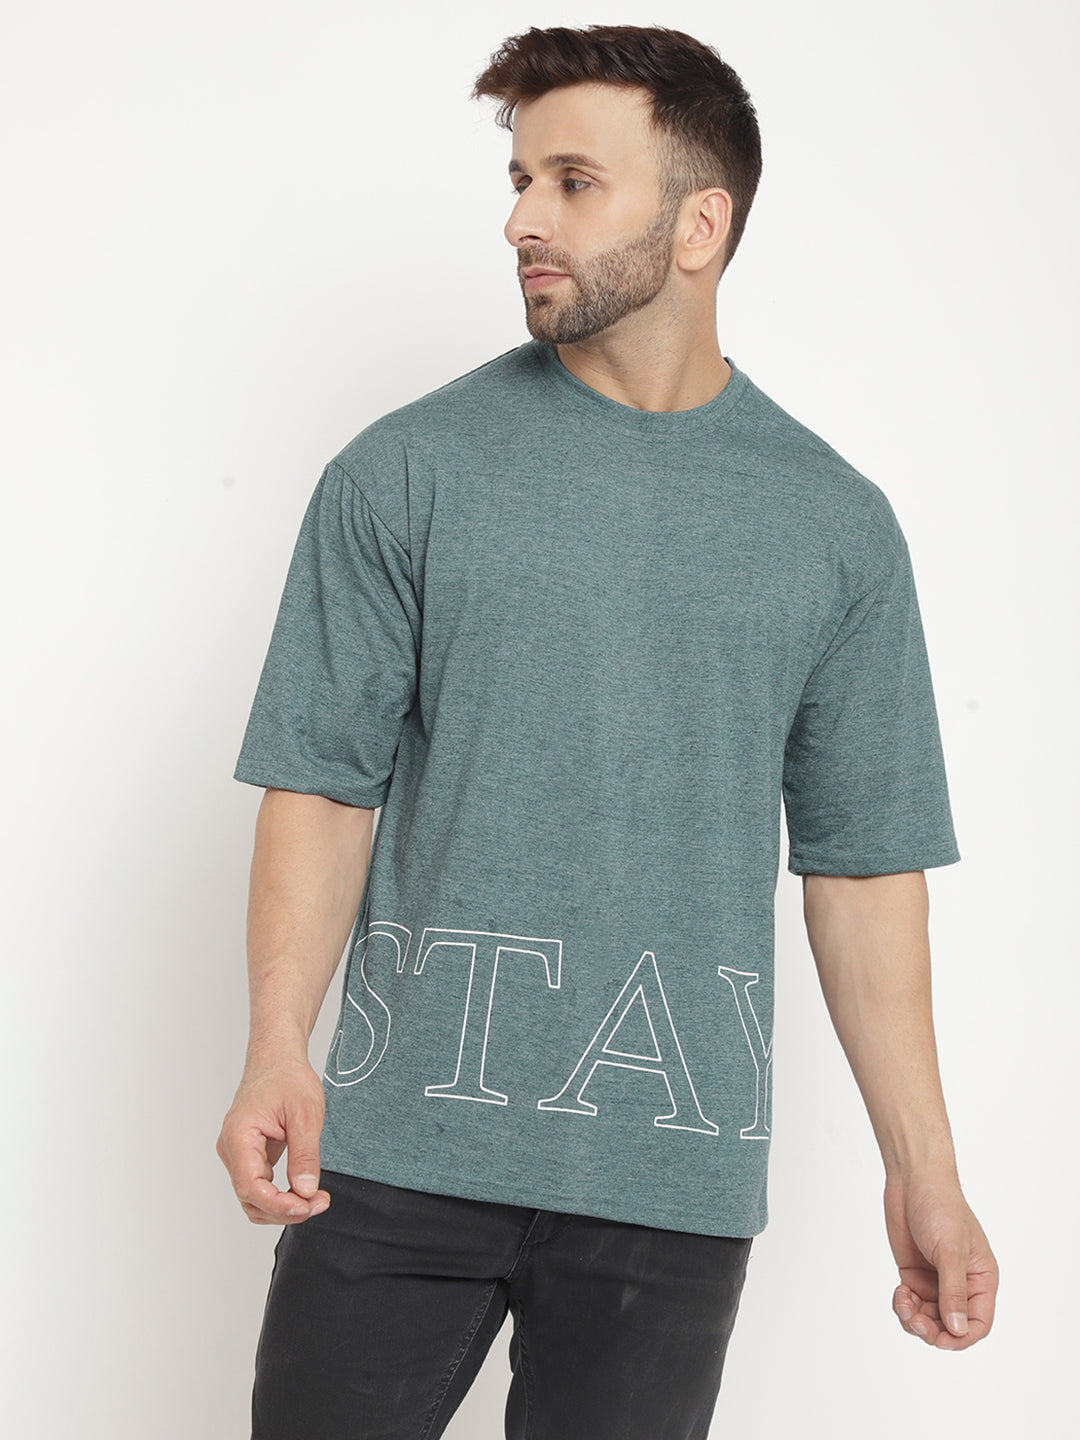 Oversized Green Melange "Stay" T-Shirt